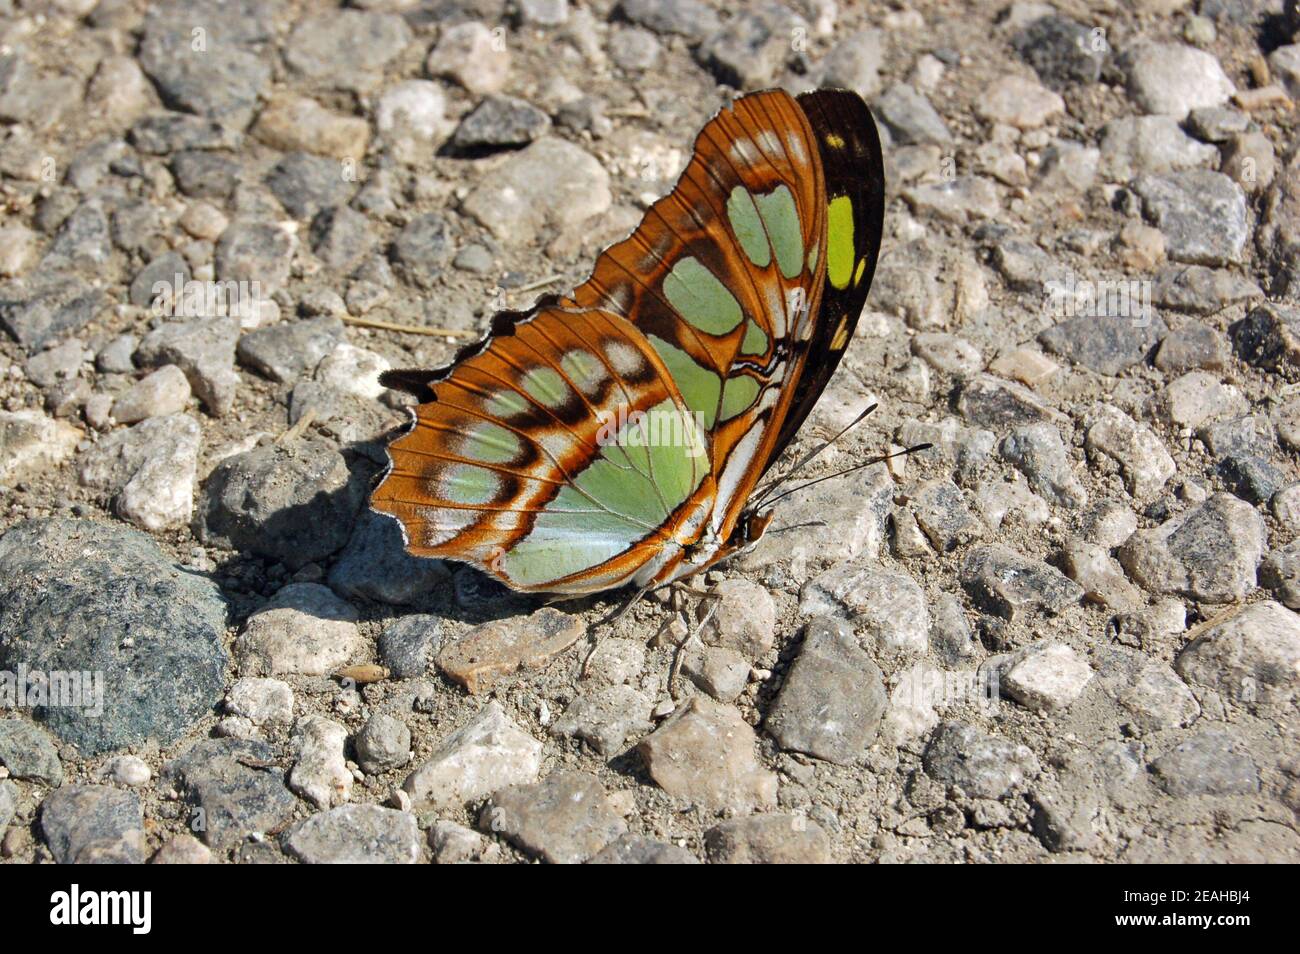 Una bella farfalla malachita verde e nera che riposa su un sentiero di pietra a Cuba. Foto Stock